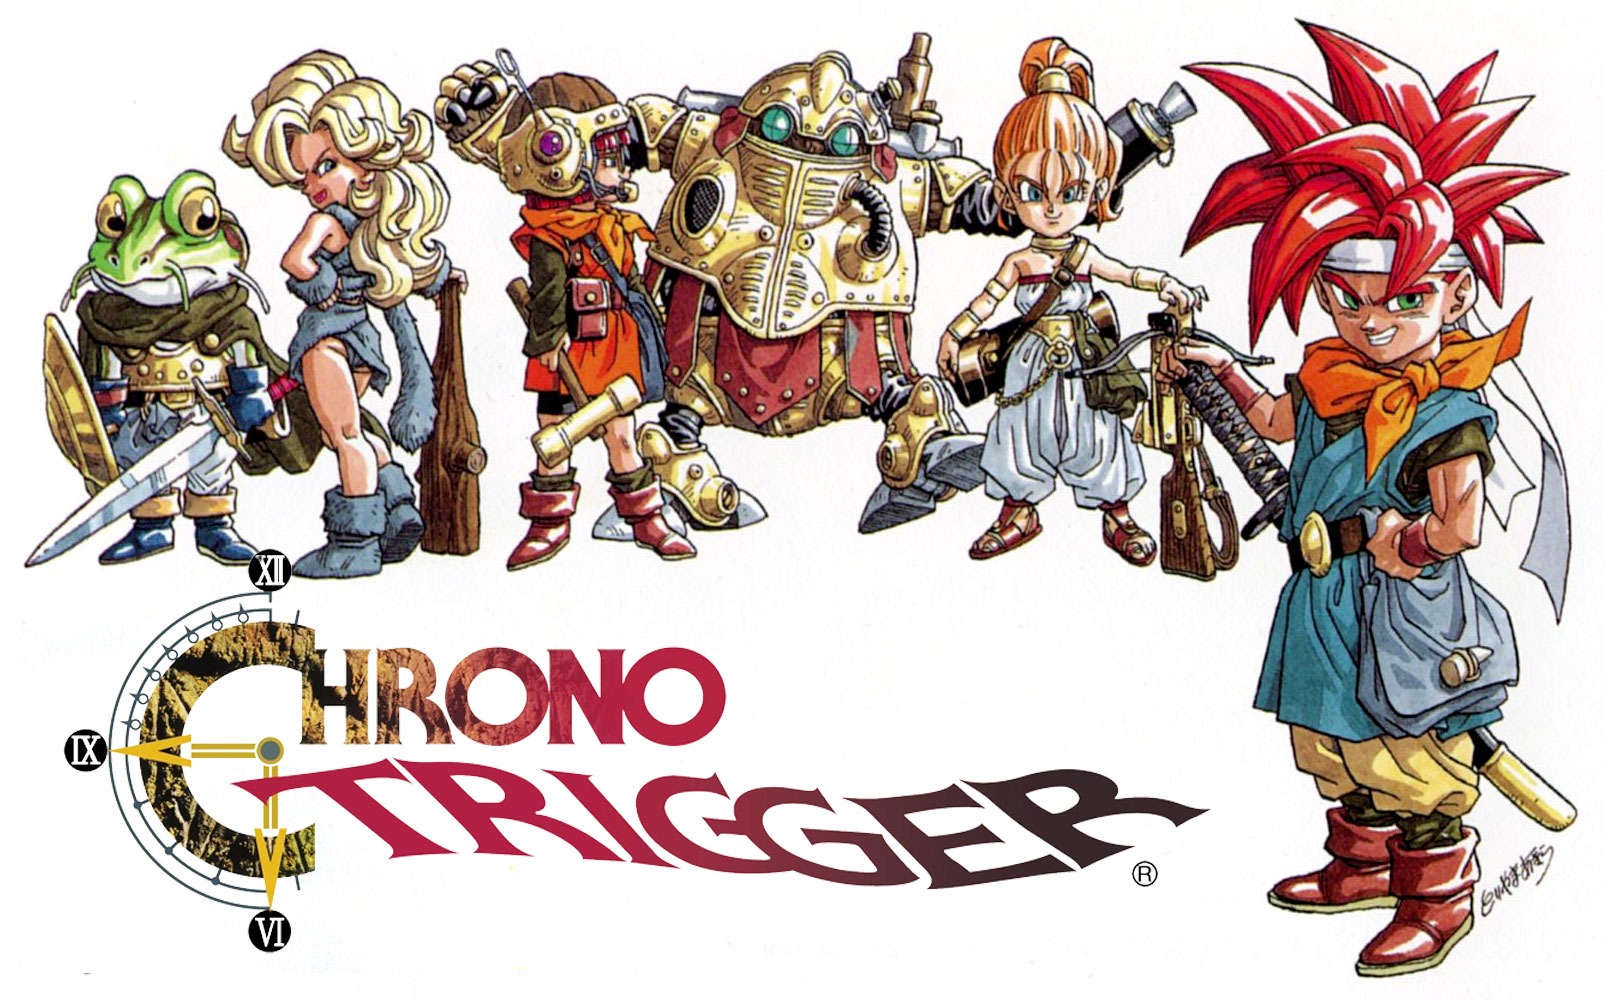 Chrono Trigger: tudo sobre o histórico RPG amado até hoje